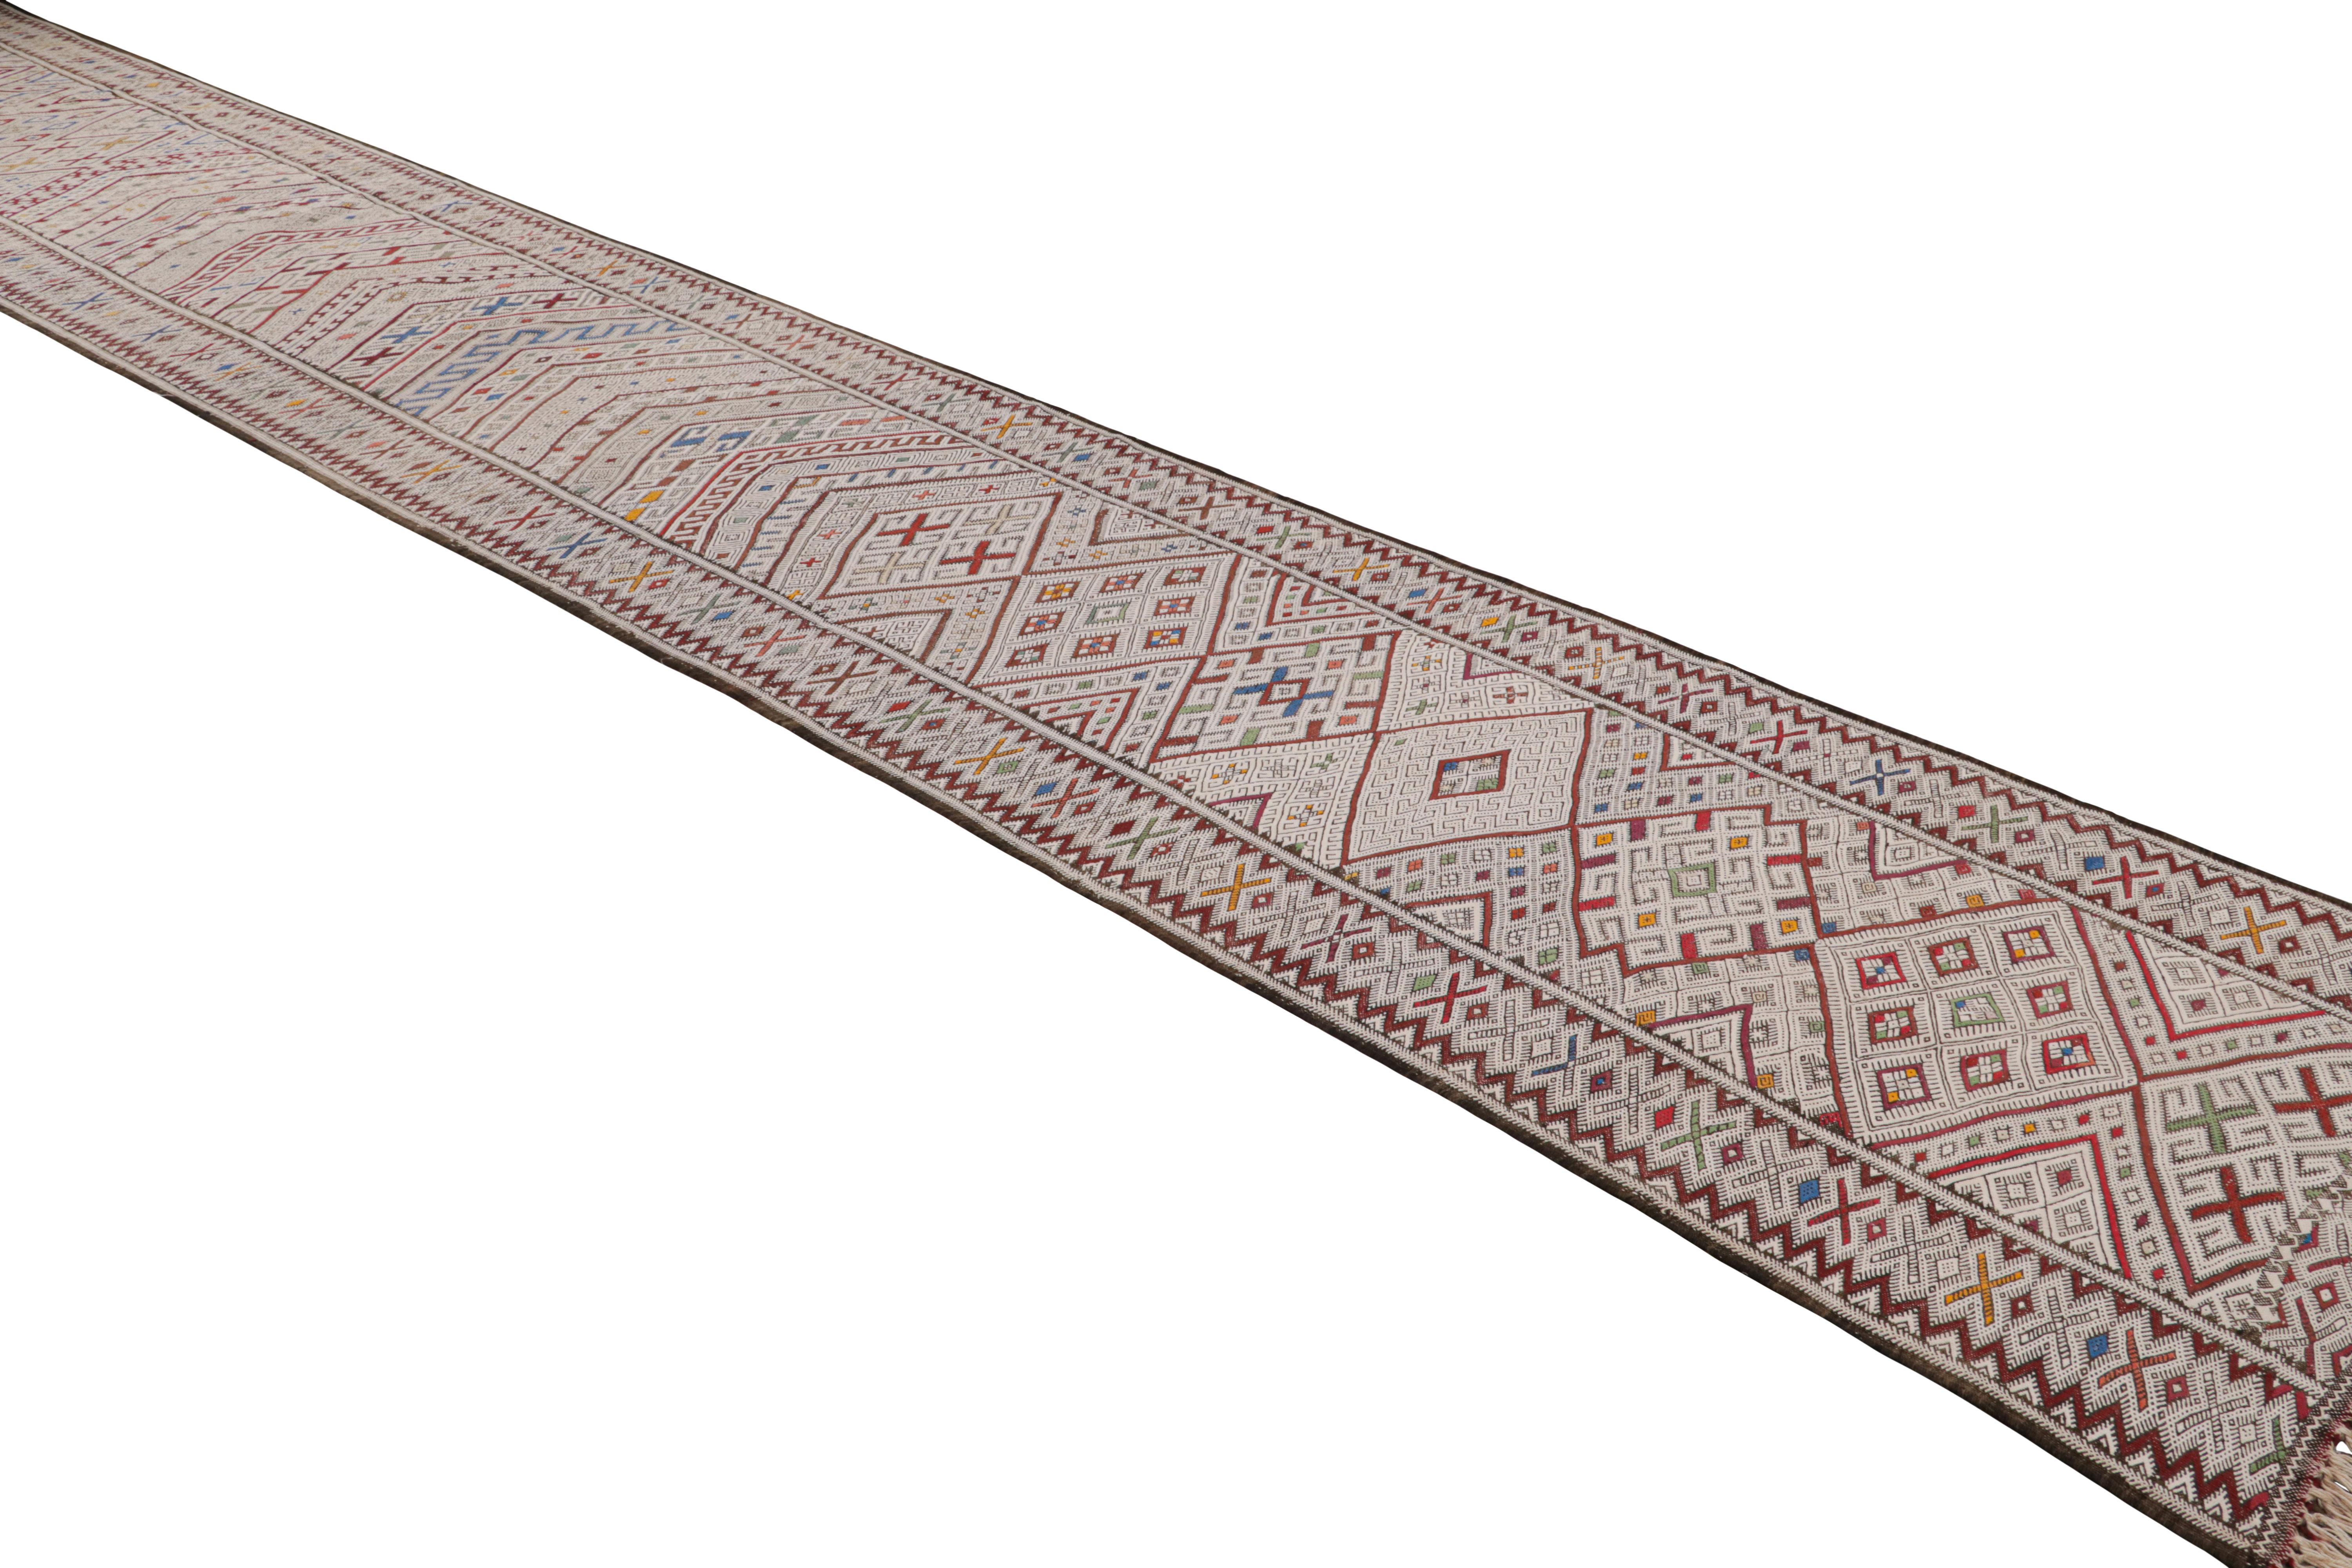 Dieser marokkanische 3x23-Kilim-Läufer ist ein Zayane-Teppich des gleichnamigen Stammes, handgewebt aus Wolle um 1950-1960.

Über das Design:

Dieses Flachgewebe erfreut sich an Mustern in polychromen Farbgebungen, wobei vor allem Weiß- und